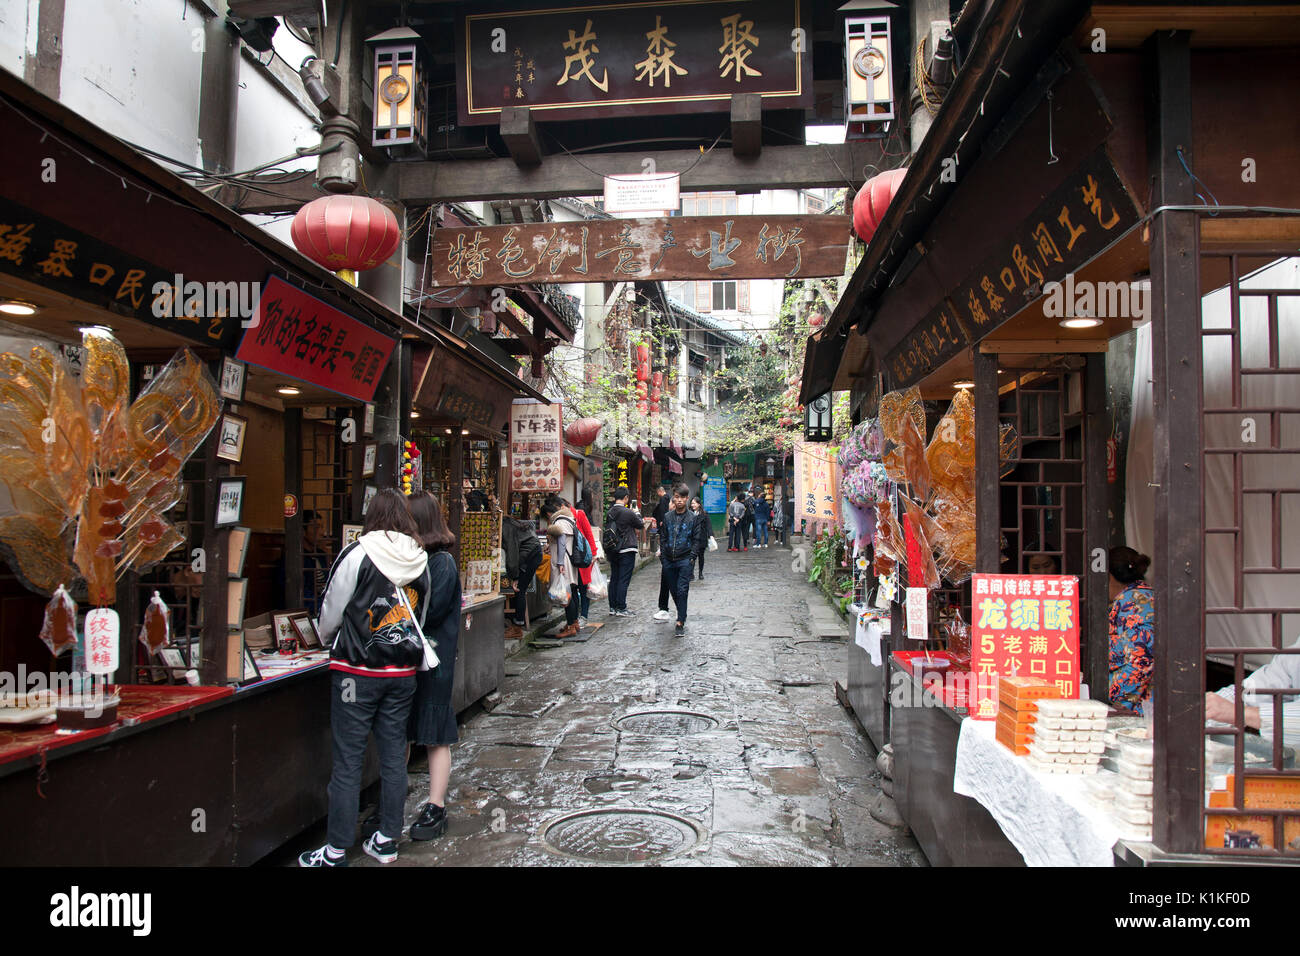 Rainy shopping day in Ciqikou Old Town, Chongqing, China. Stock Photo